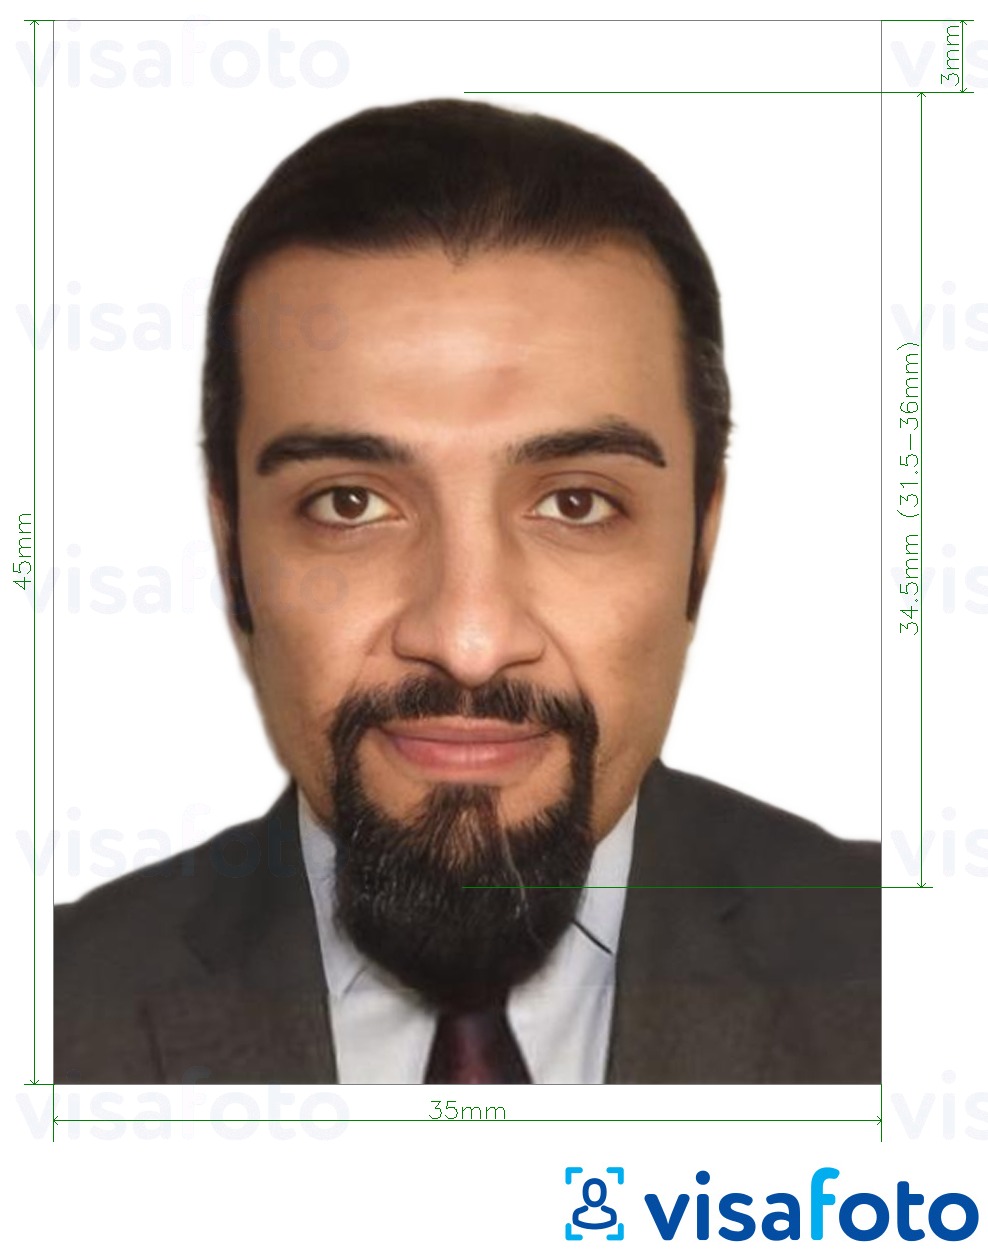 Eksempel på billede for Etiopien e-visum online 35x45 mm (3.5x4.5 cm) med præcis størrelsesspecifikation.